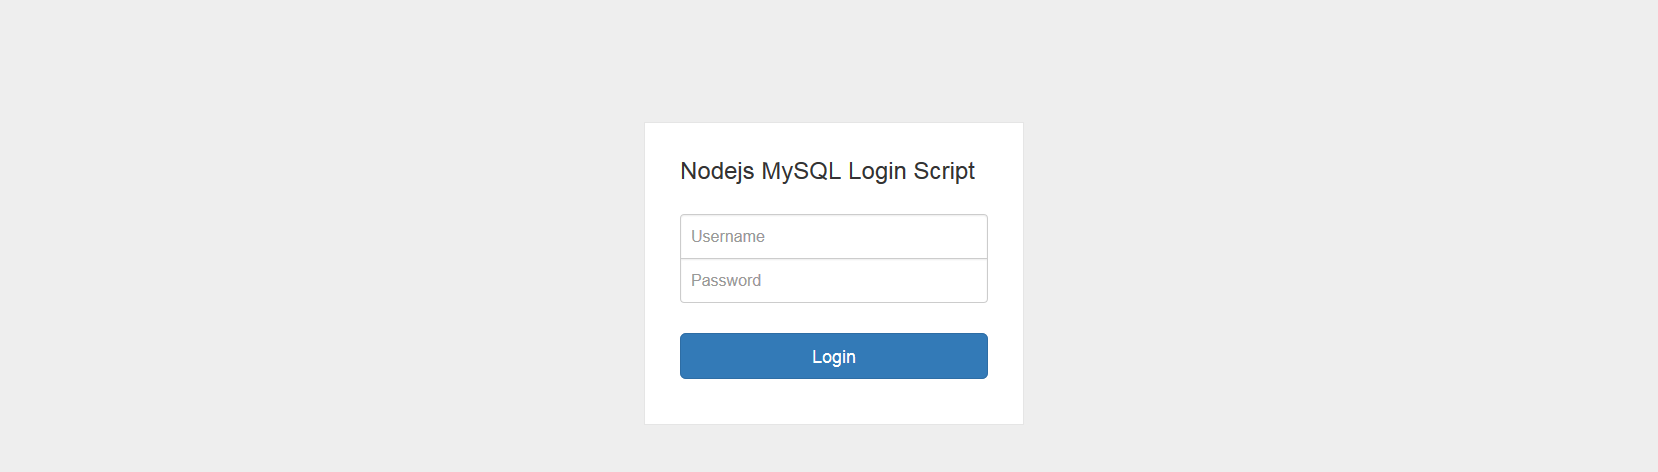 nodejs passport login login form